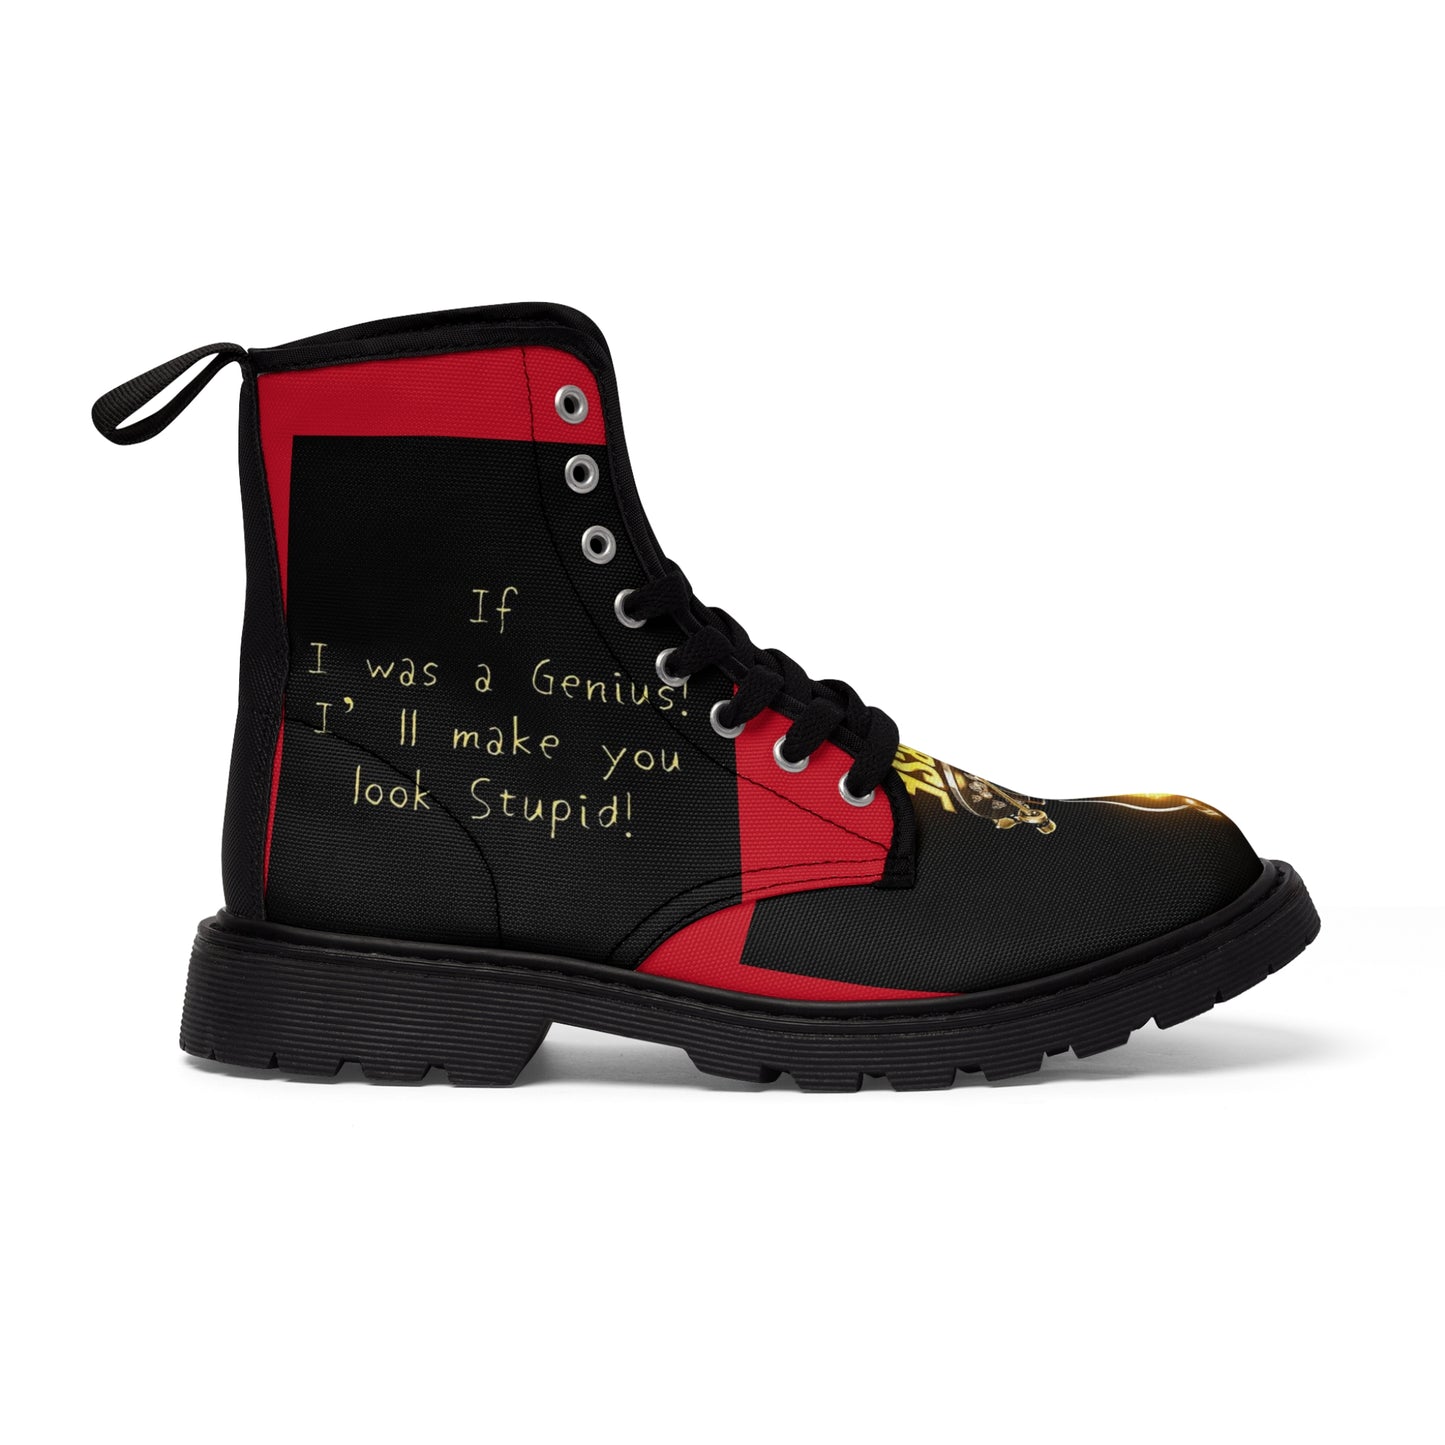 Diverse Black/ Red's Men's Canvas Boots